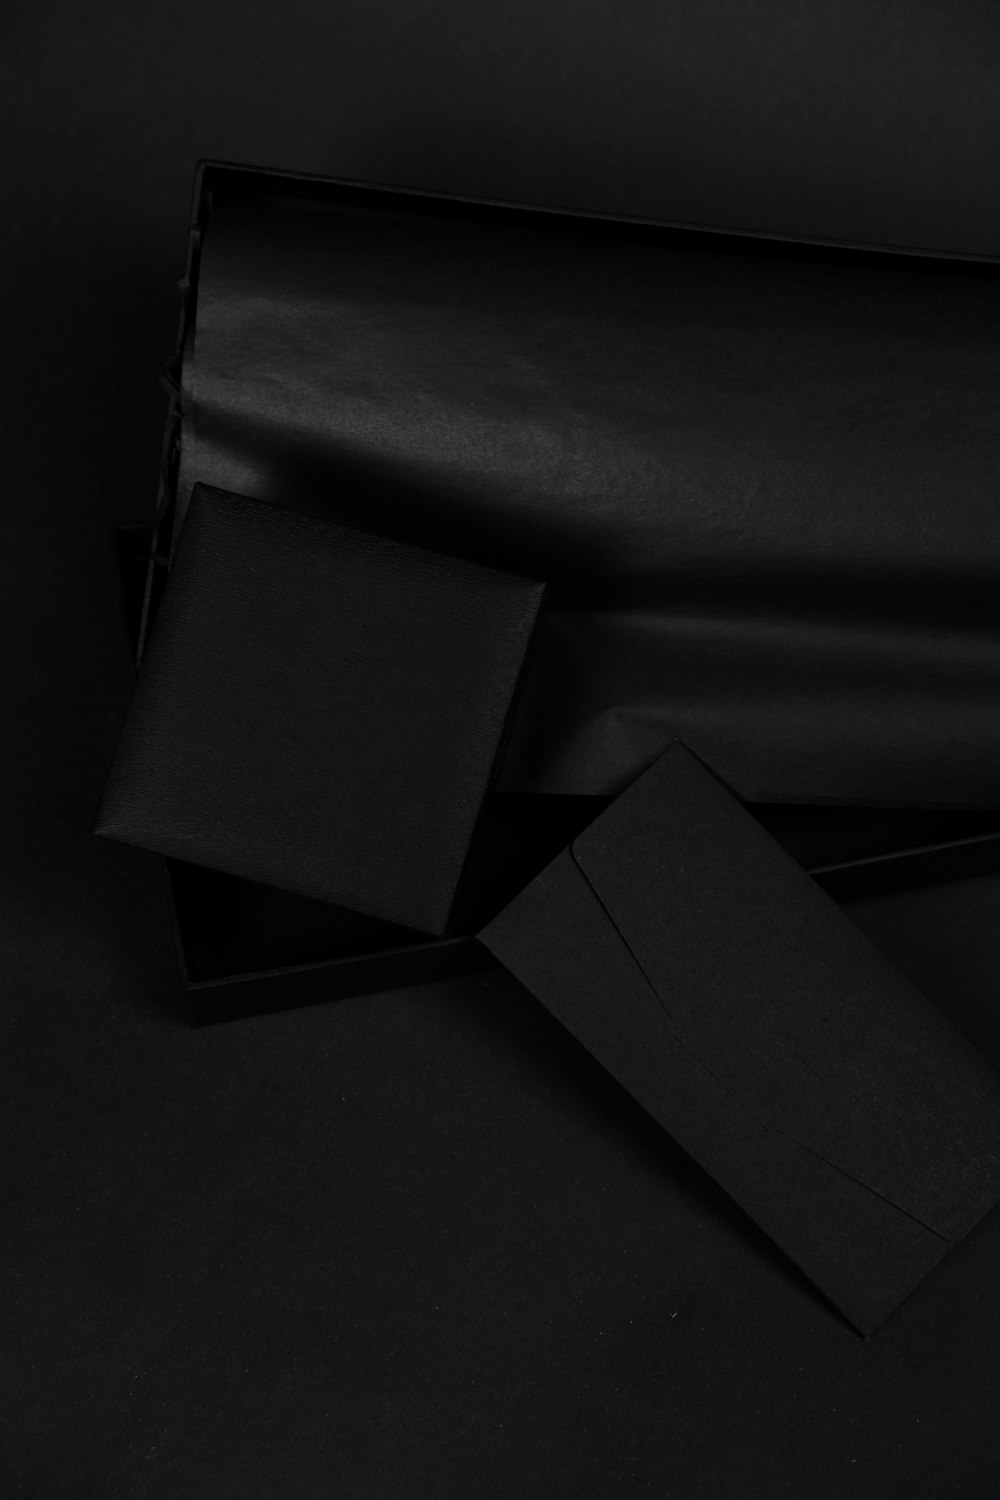 Boîte noire sur textile noir